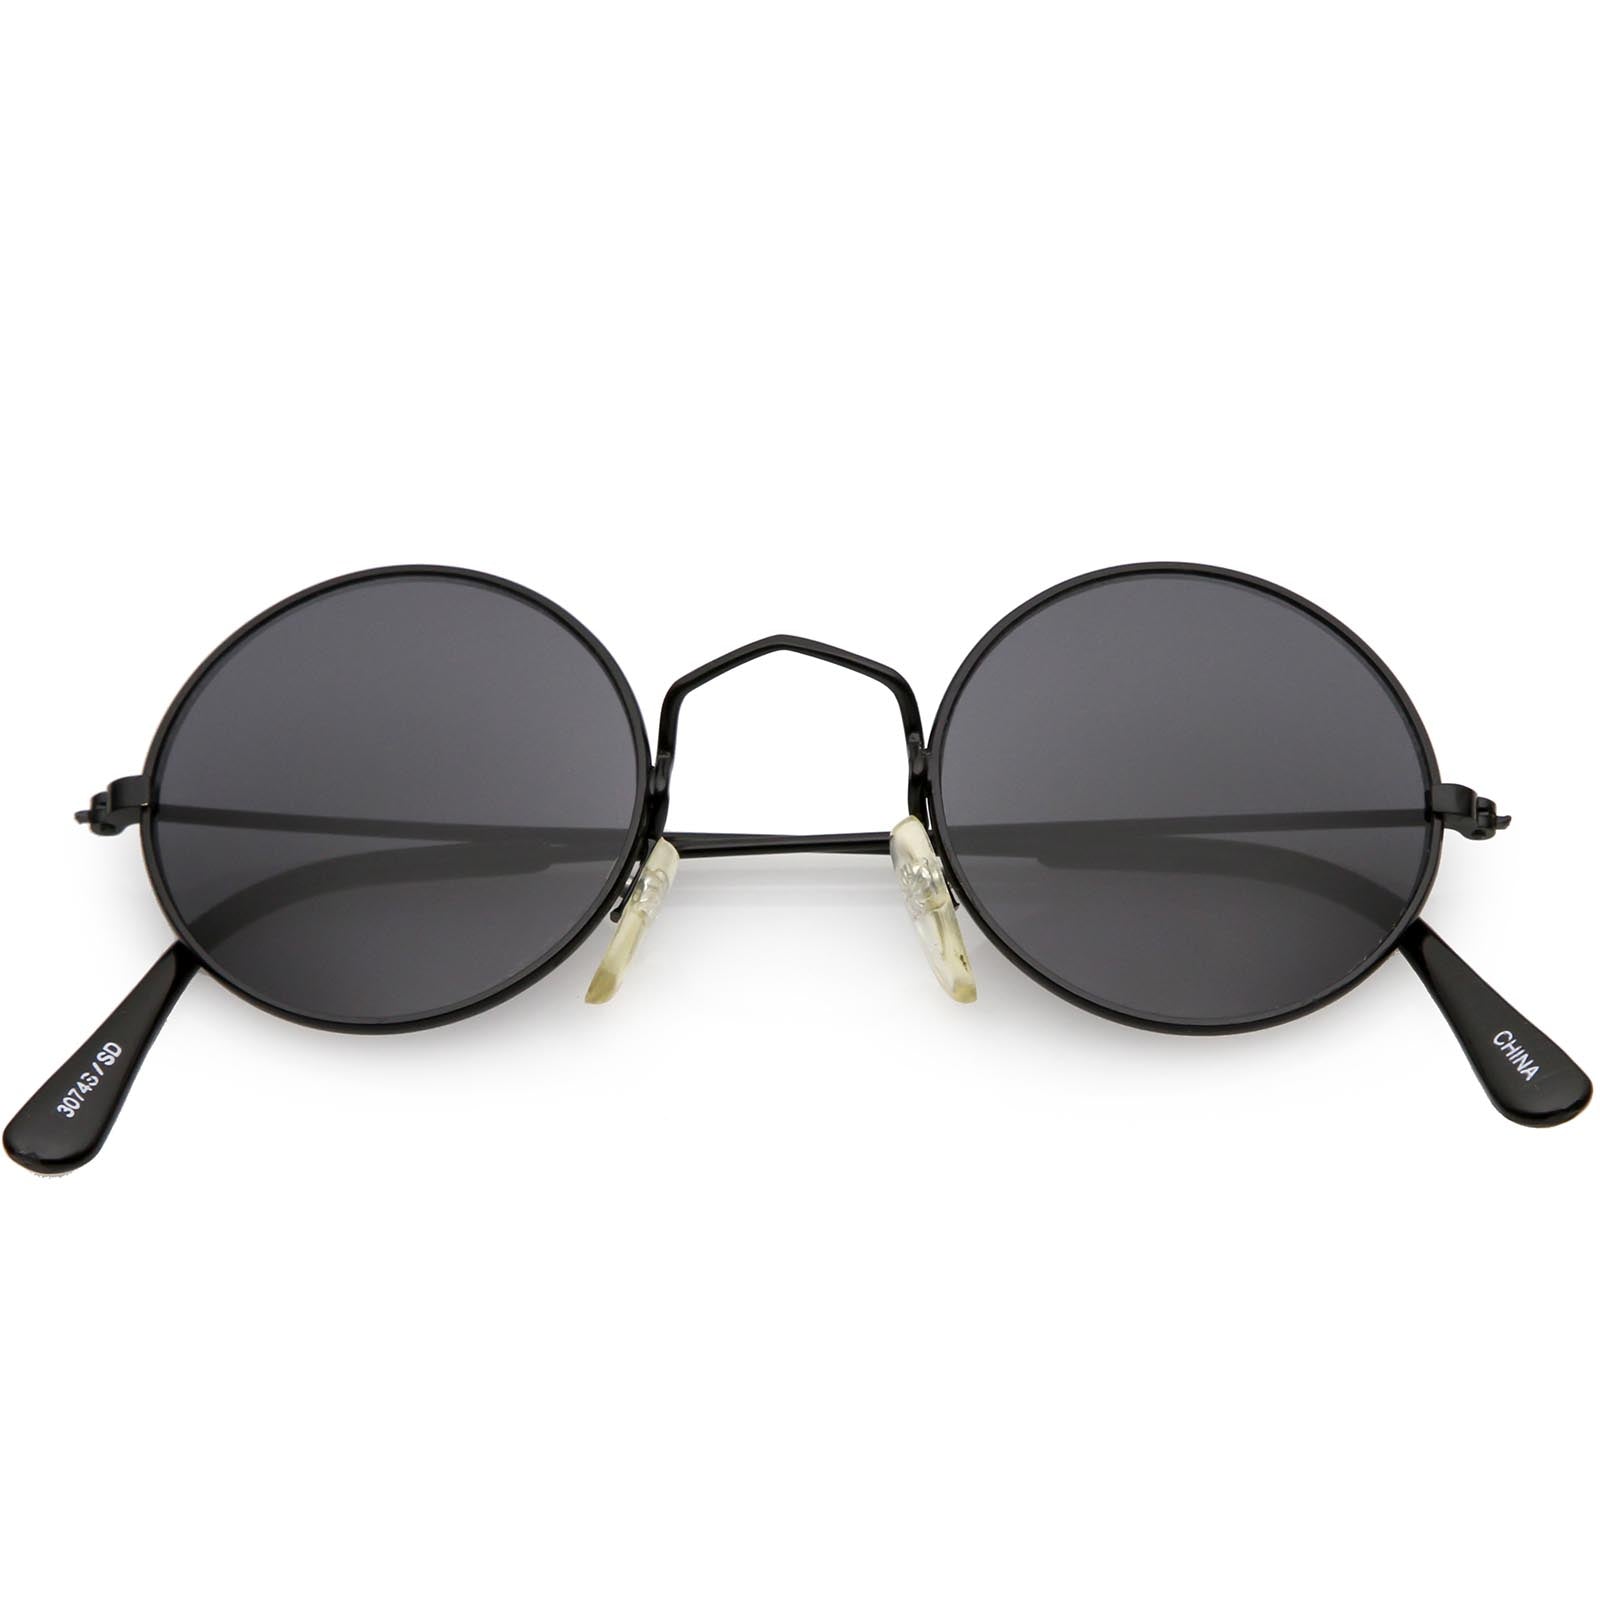 Round Red Sun Glasses Sunglasses | Small Black Round Sun Glasses - Retro  Small Round - Aliexpress